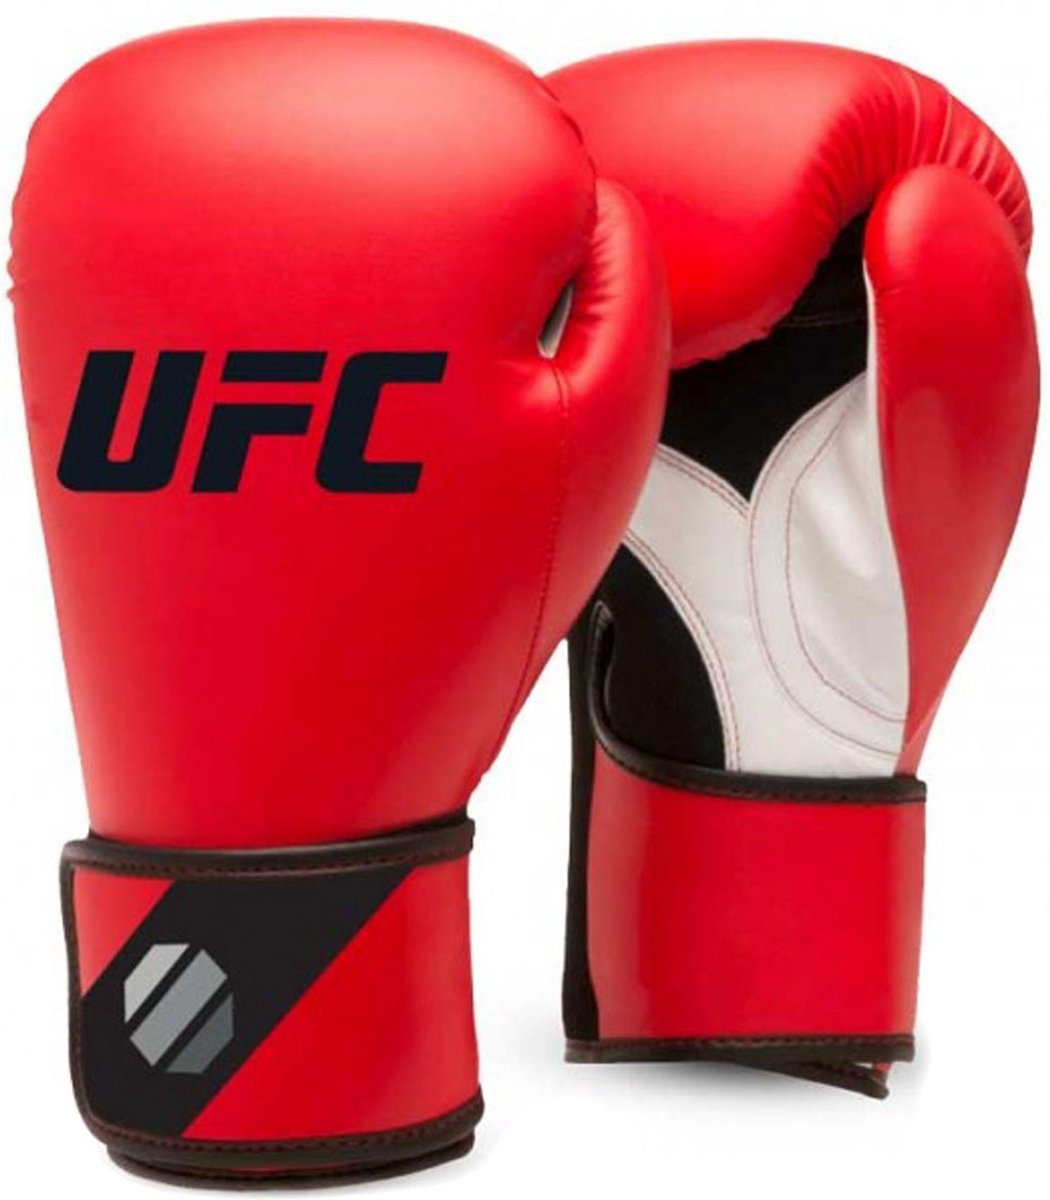 UFC - Training (kick)bokshandschoenen (16 oz - Zwart/Rood)